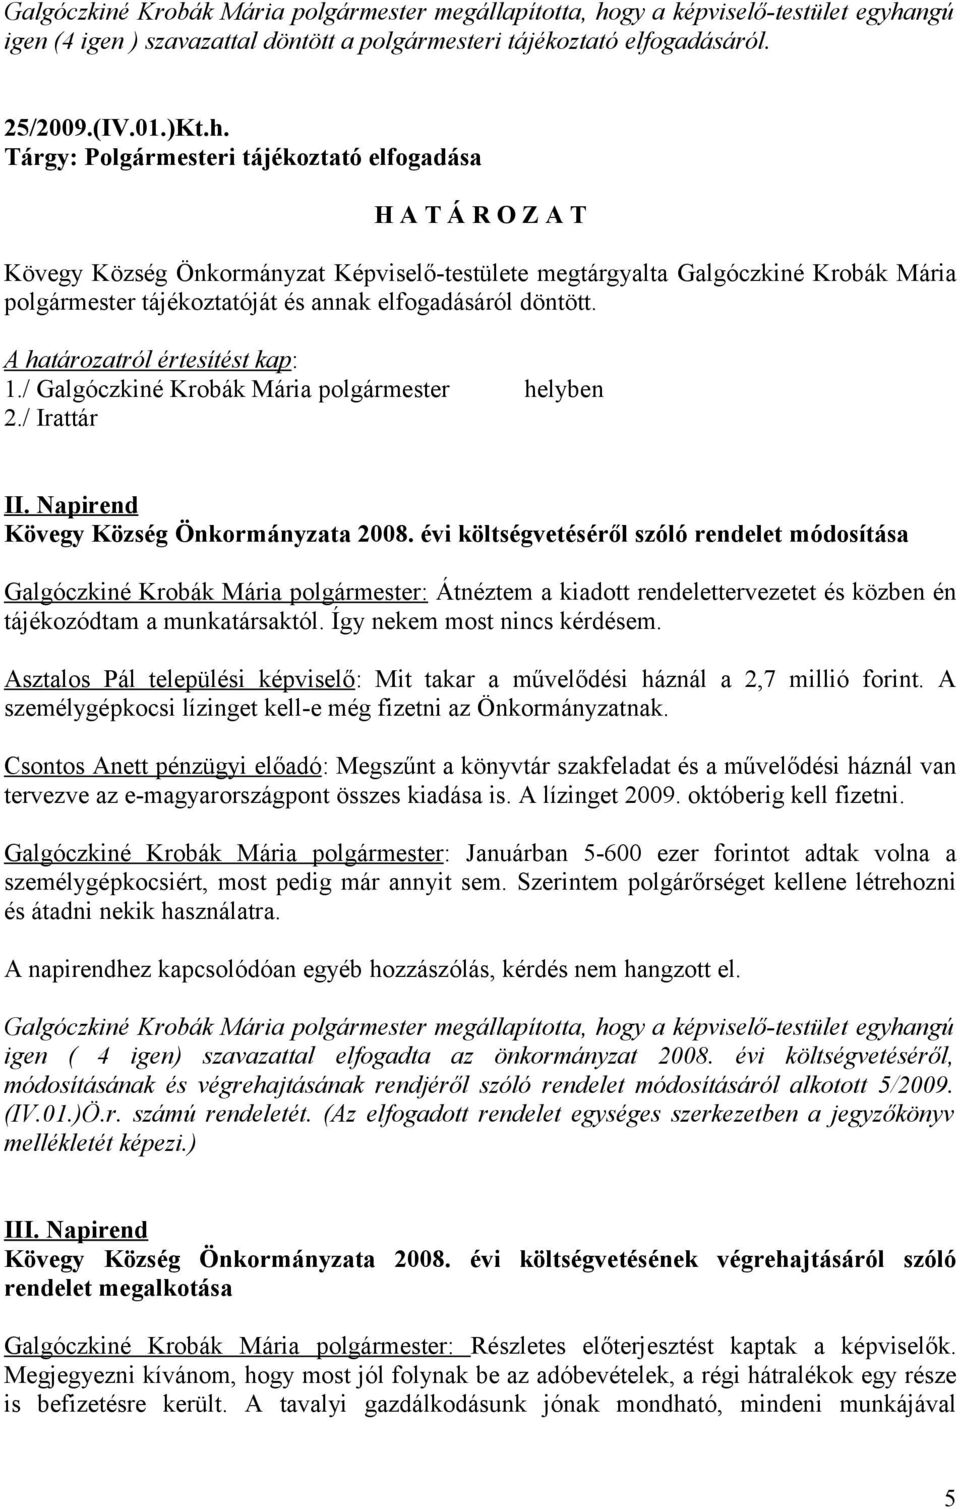 ngú igen (4 igen ) szavazattal döntött a polgármesteri tájékoztató elfogadásáról. 25/2009.(IV.01.)Kt.h.